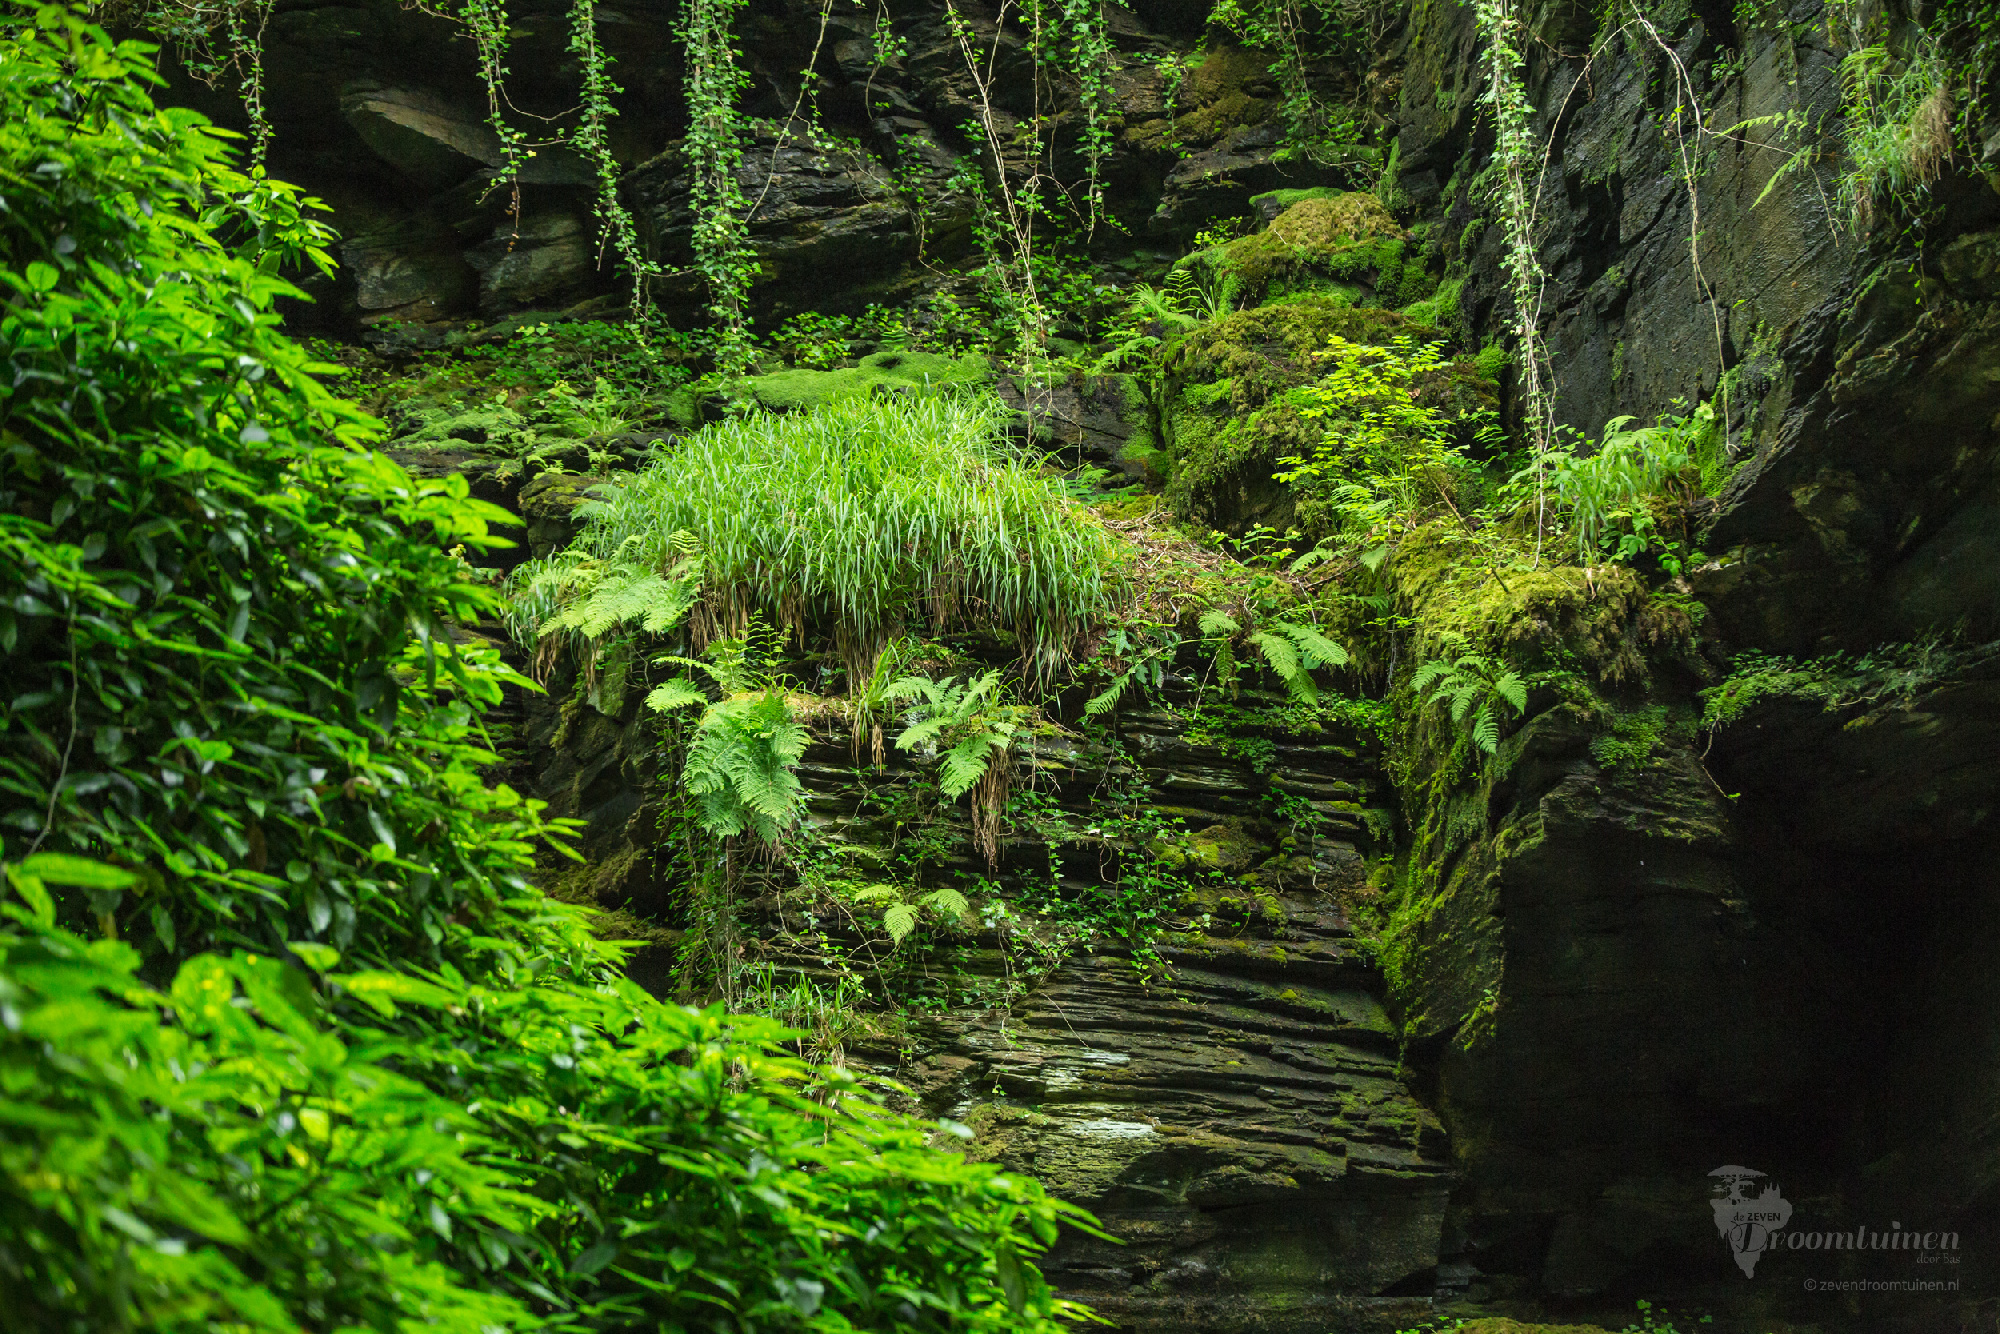 Een sfeerimpressie: Het gevoel wat ik wil ervaren, zodra ik de verborgen tuinen van Trysór binnentrek. Een ingang verscholen achter dichtbegroeide (hangende) planten. Wat voor wereld gaat er hierachter schuil? Deze impressie-foto is genomen bij St Nectan's Waterfall, UK.